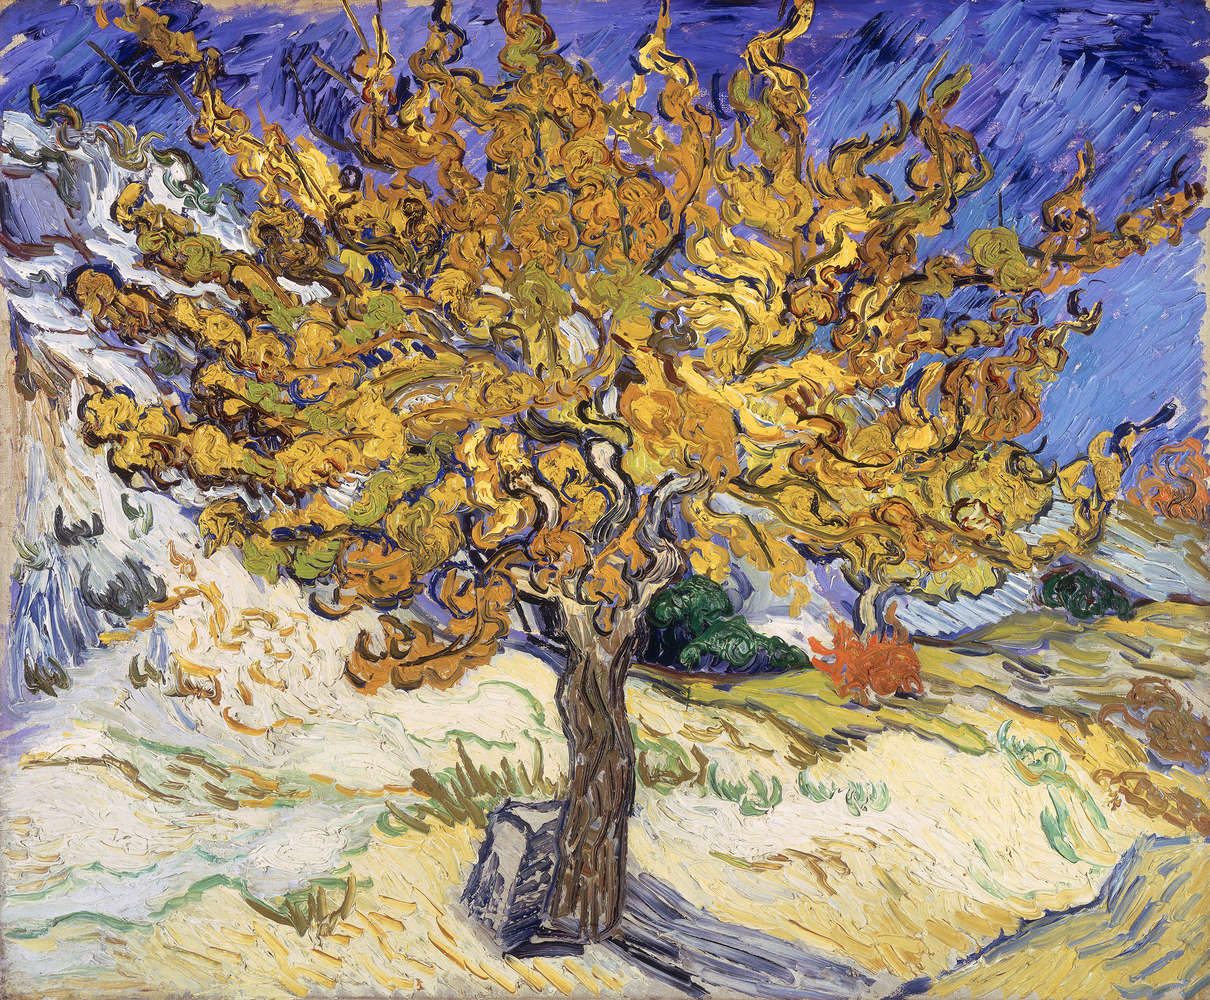             Moerbeiboom" muurschildering van Vincent van Gogh
        